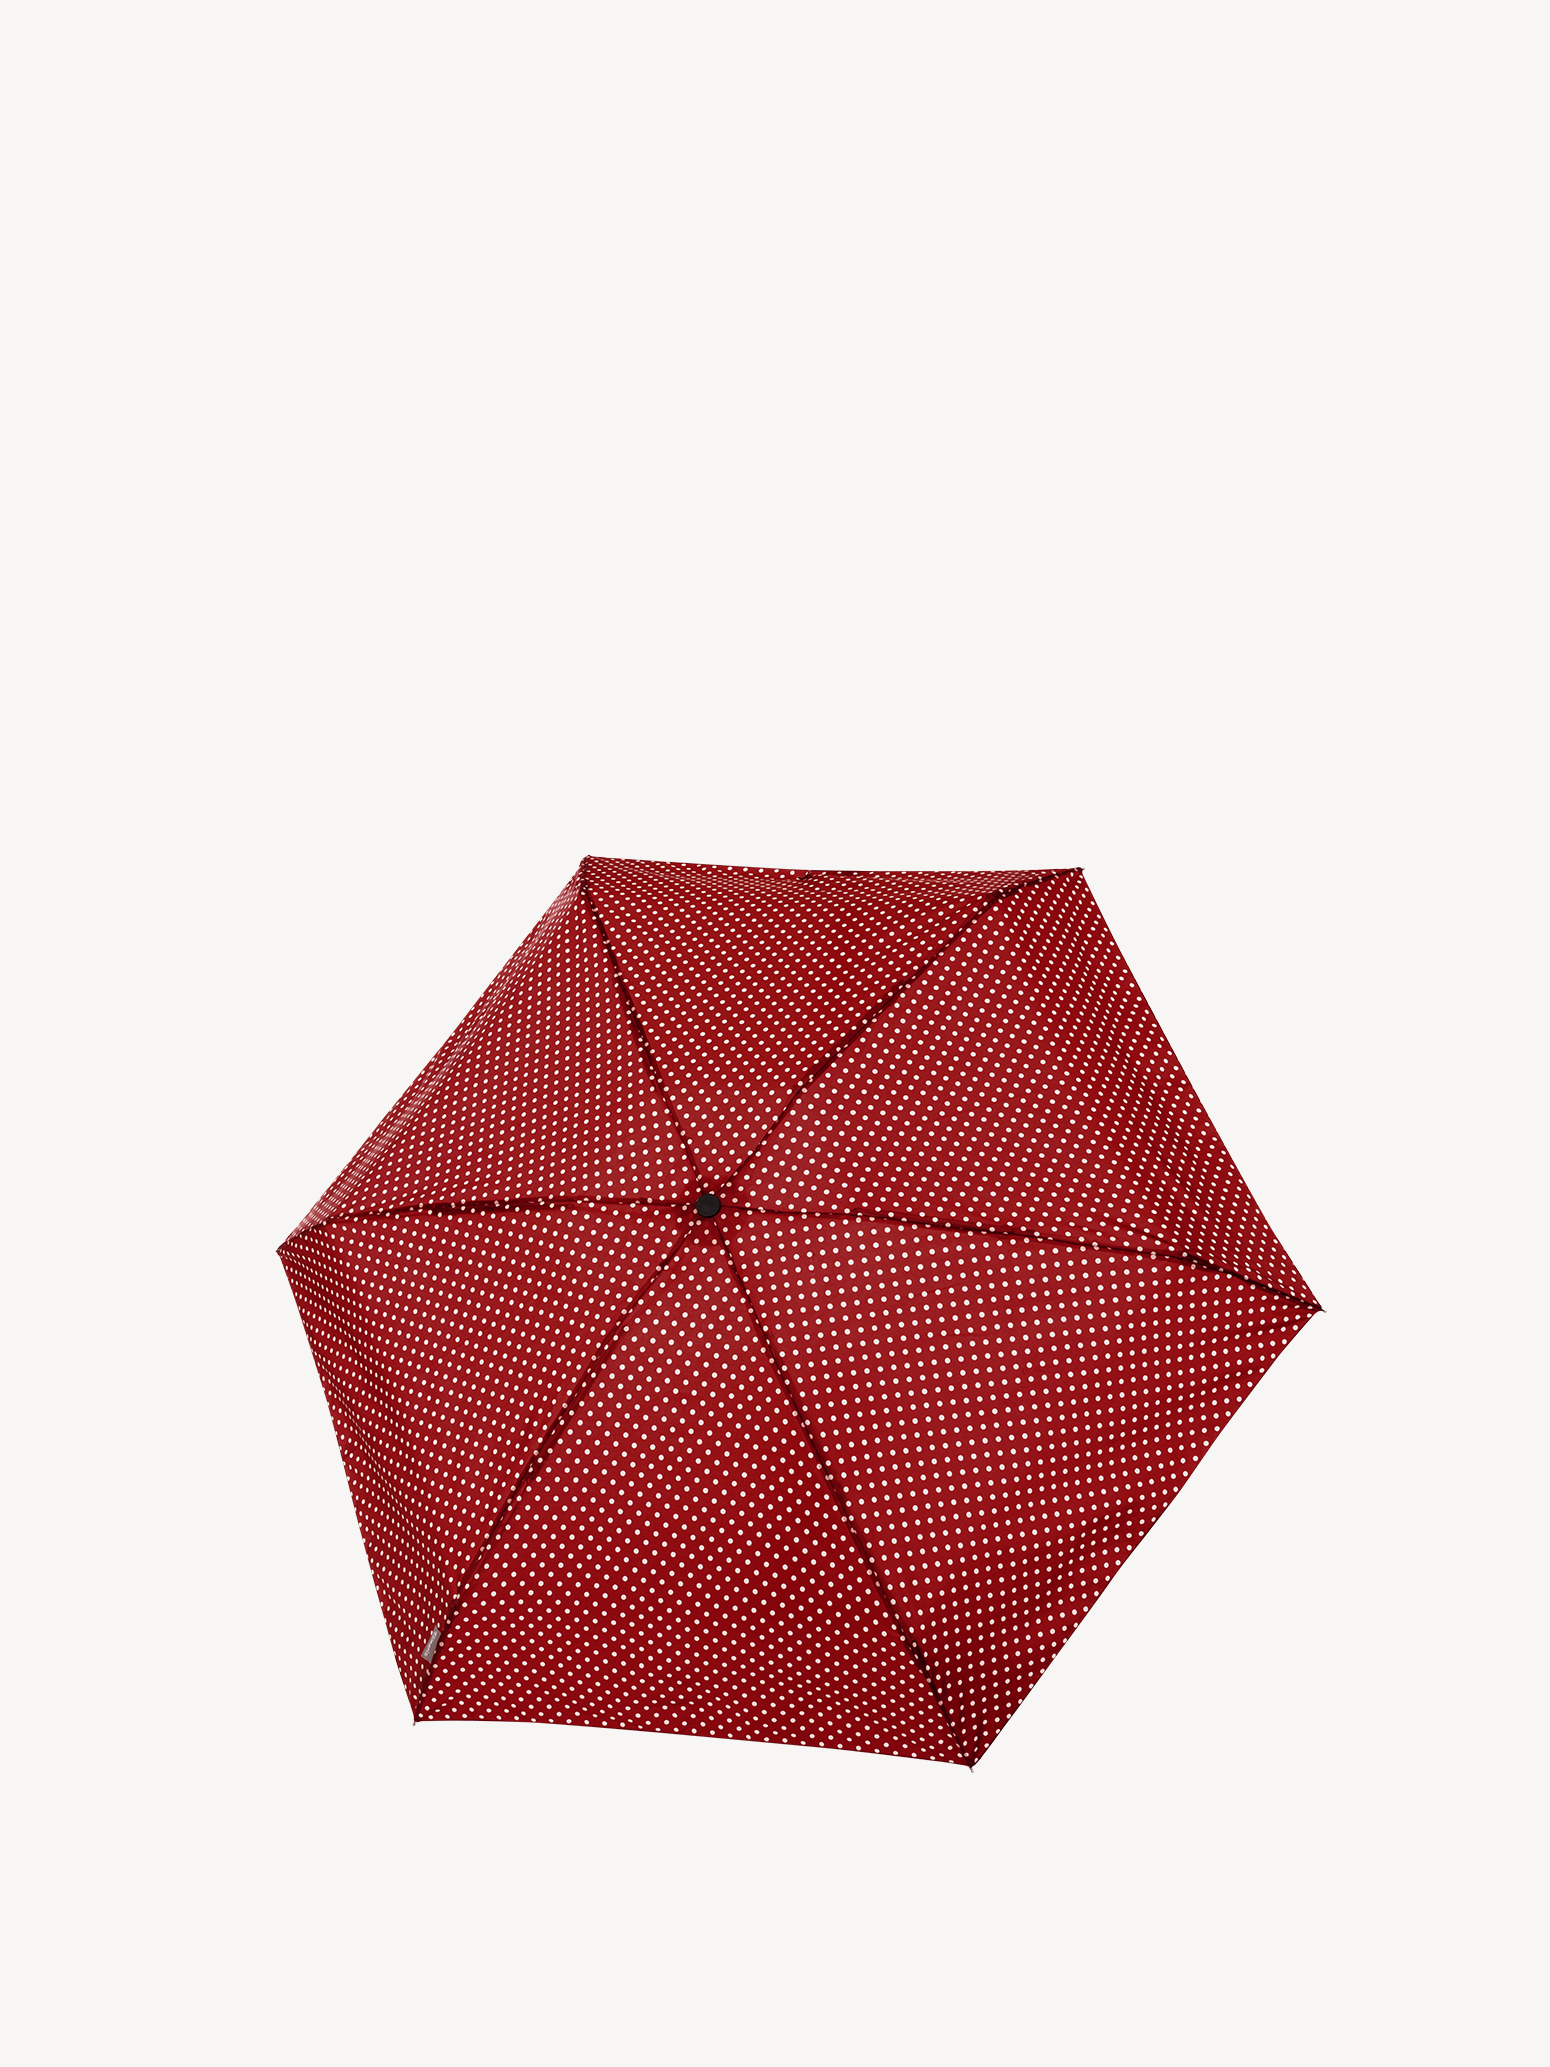 Зонт Tambrella Mini 6 - изображение №1